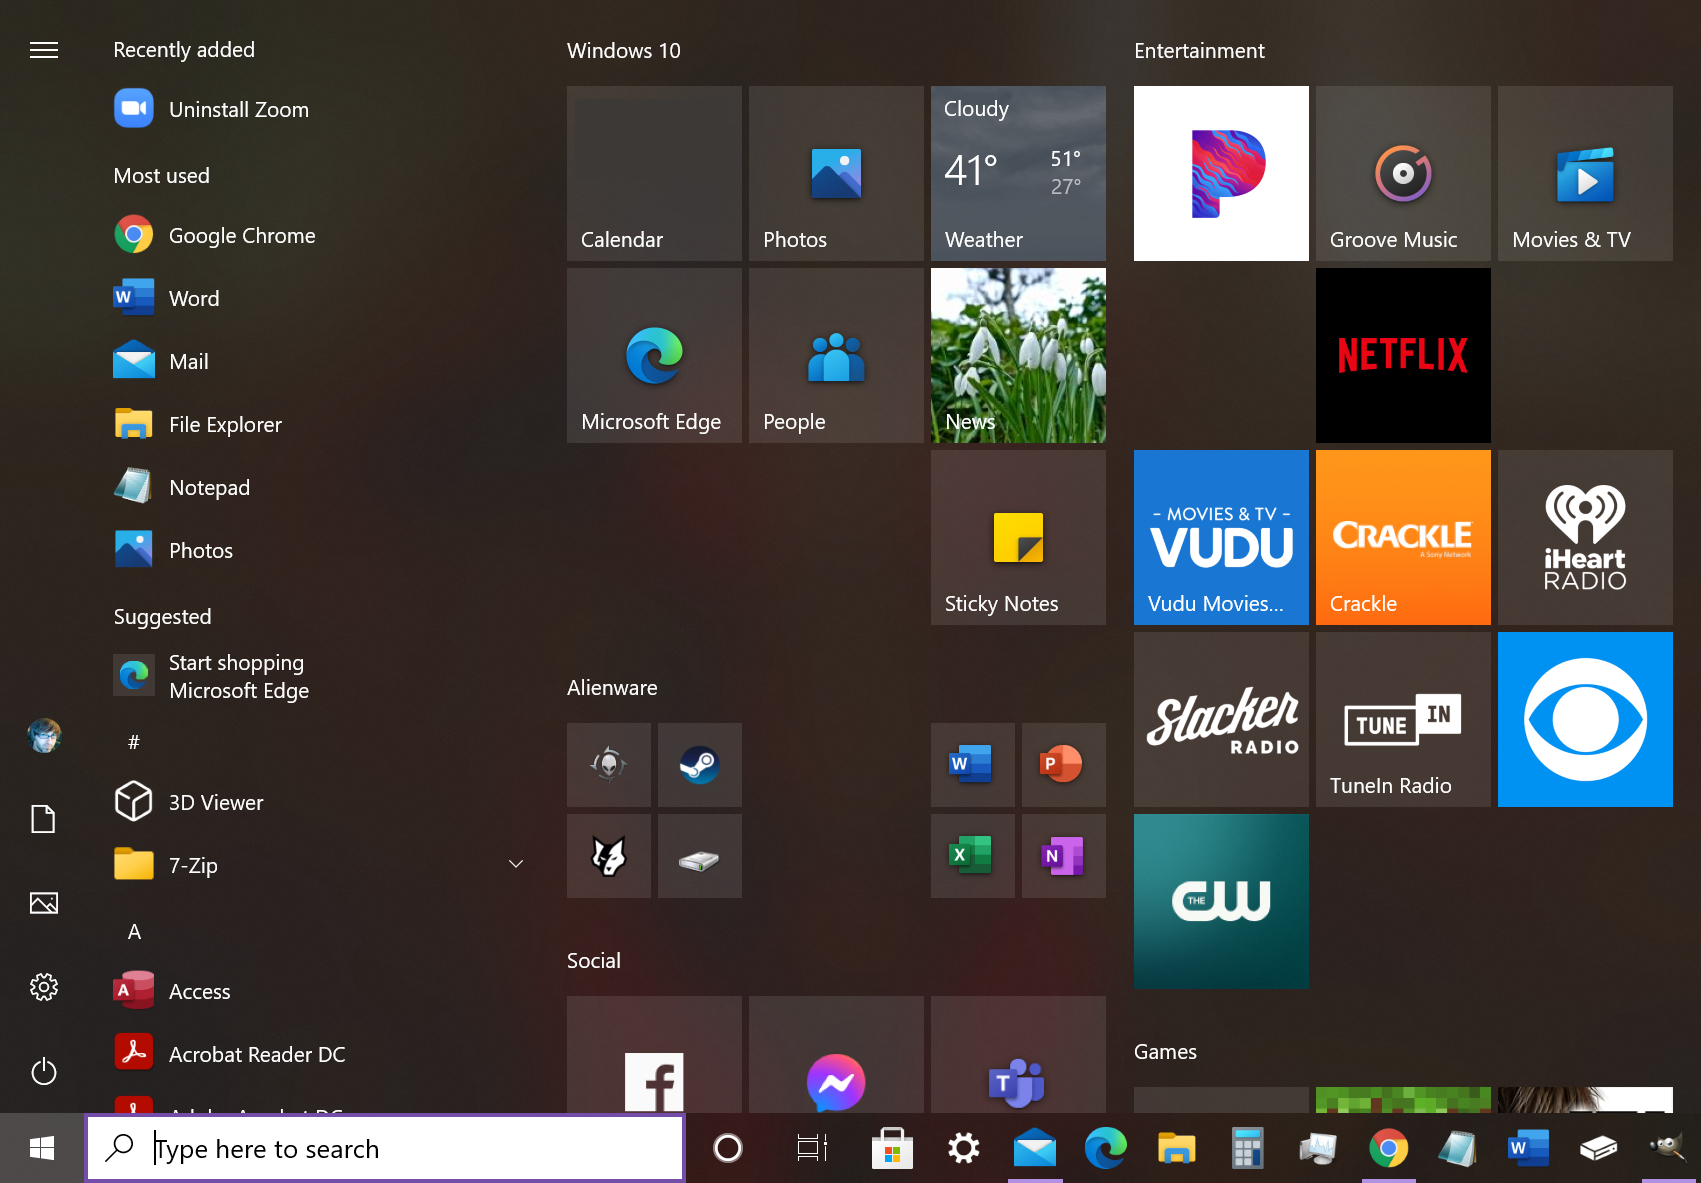 Với khả năng tùy chỉnh menu bắt đầu trên Windows 10, bạn có thể sắp xếp và thêm bớt các ứng dụng để tạo nên một giao diện hoàn toàn mới mẻ. Hãy khám phá những tính năng tuyệt vời mà Windows 10 đem đến và tùy chỉnh theo ý thích của bạn.